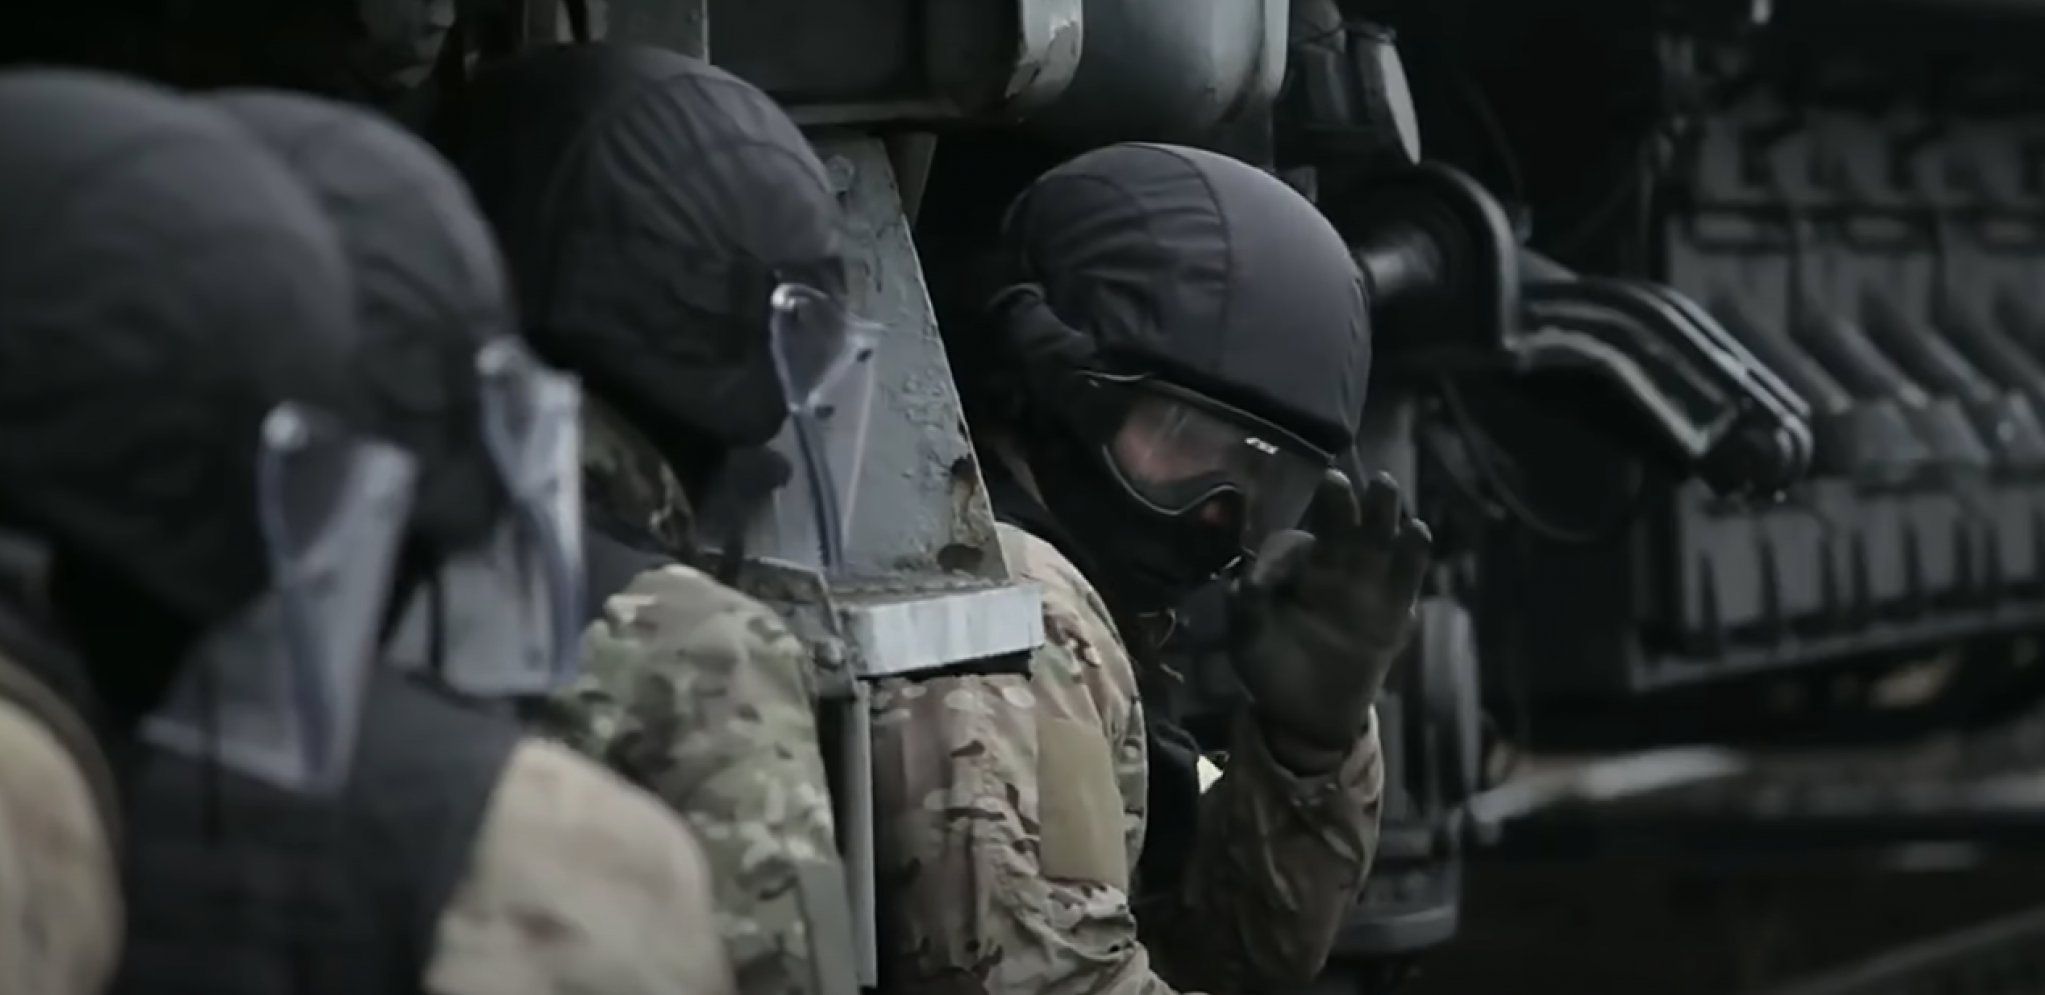 TERORISTIČKI NAPAD U MOSKVI! Panika na železničkoj stanici, FSB reagovala u poslednjem trenutku! (VIDEO)